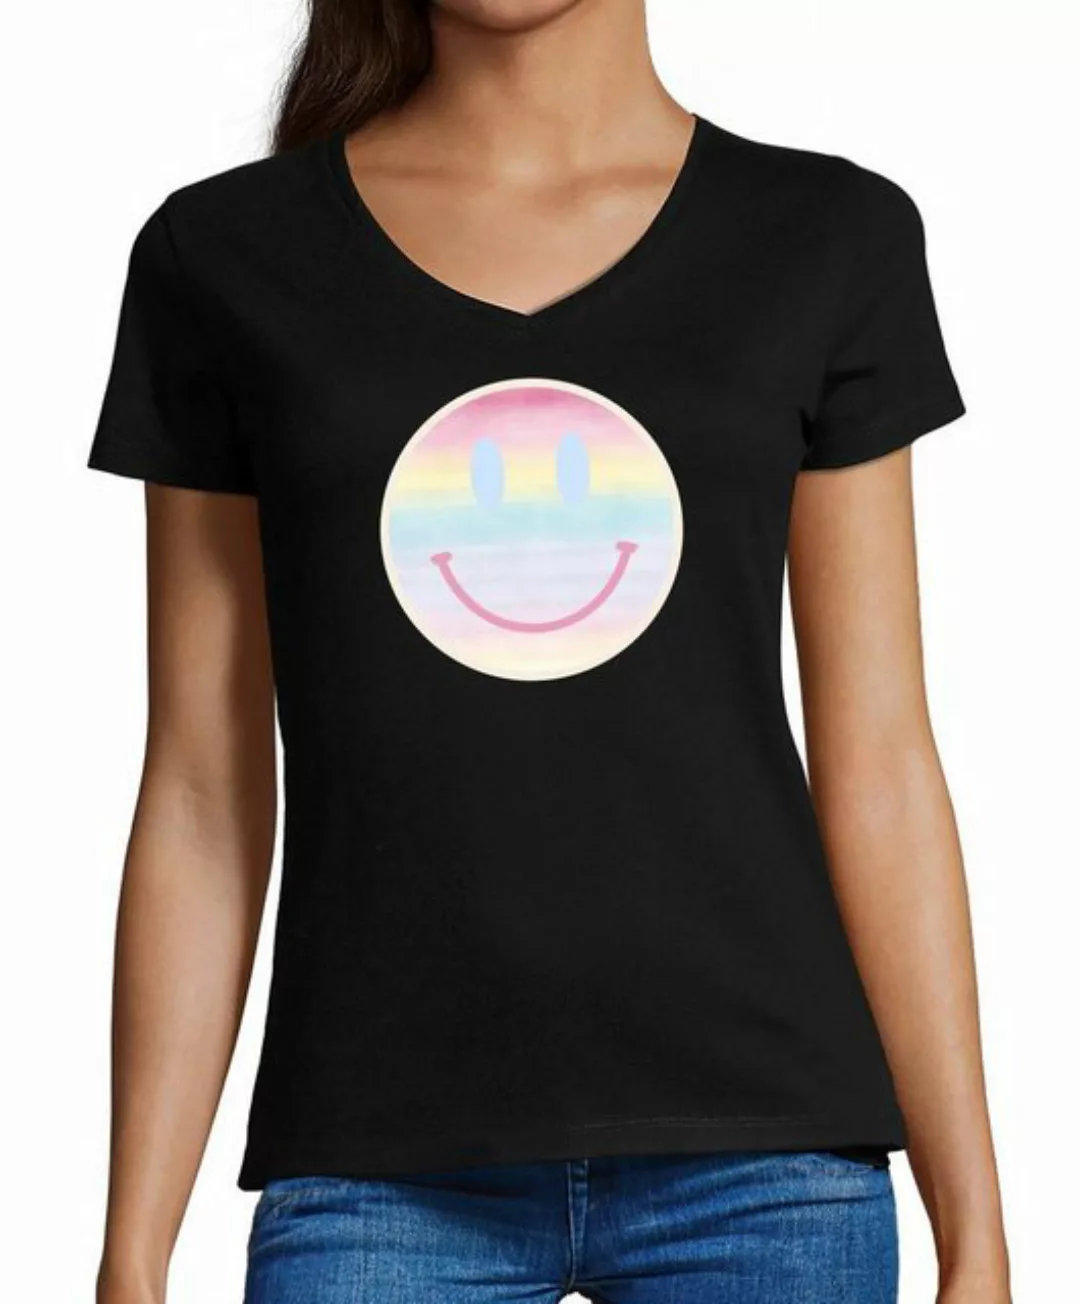 MyDesign24 T-Shirt Damen Smiley Print Shirt - Lächelnder pastellfarbener Sm günstig online kaufen